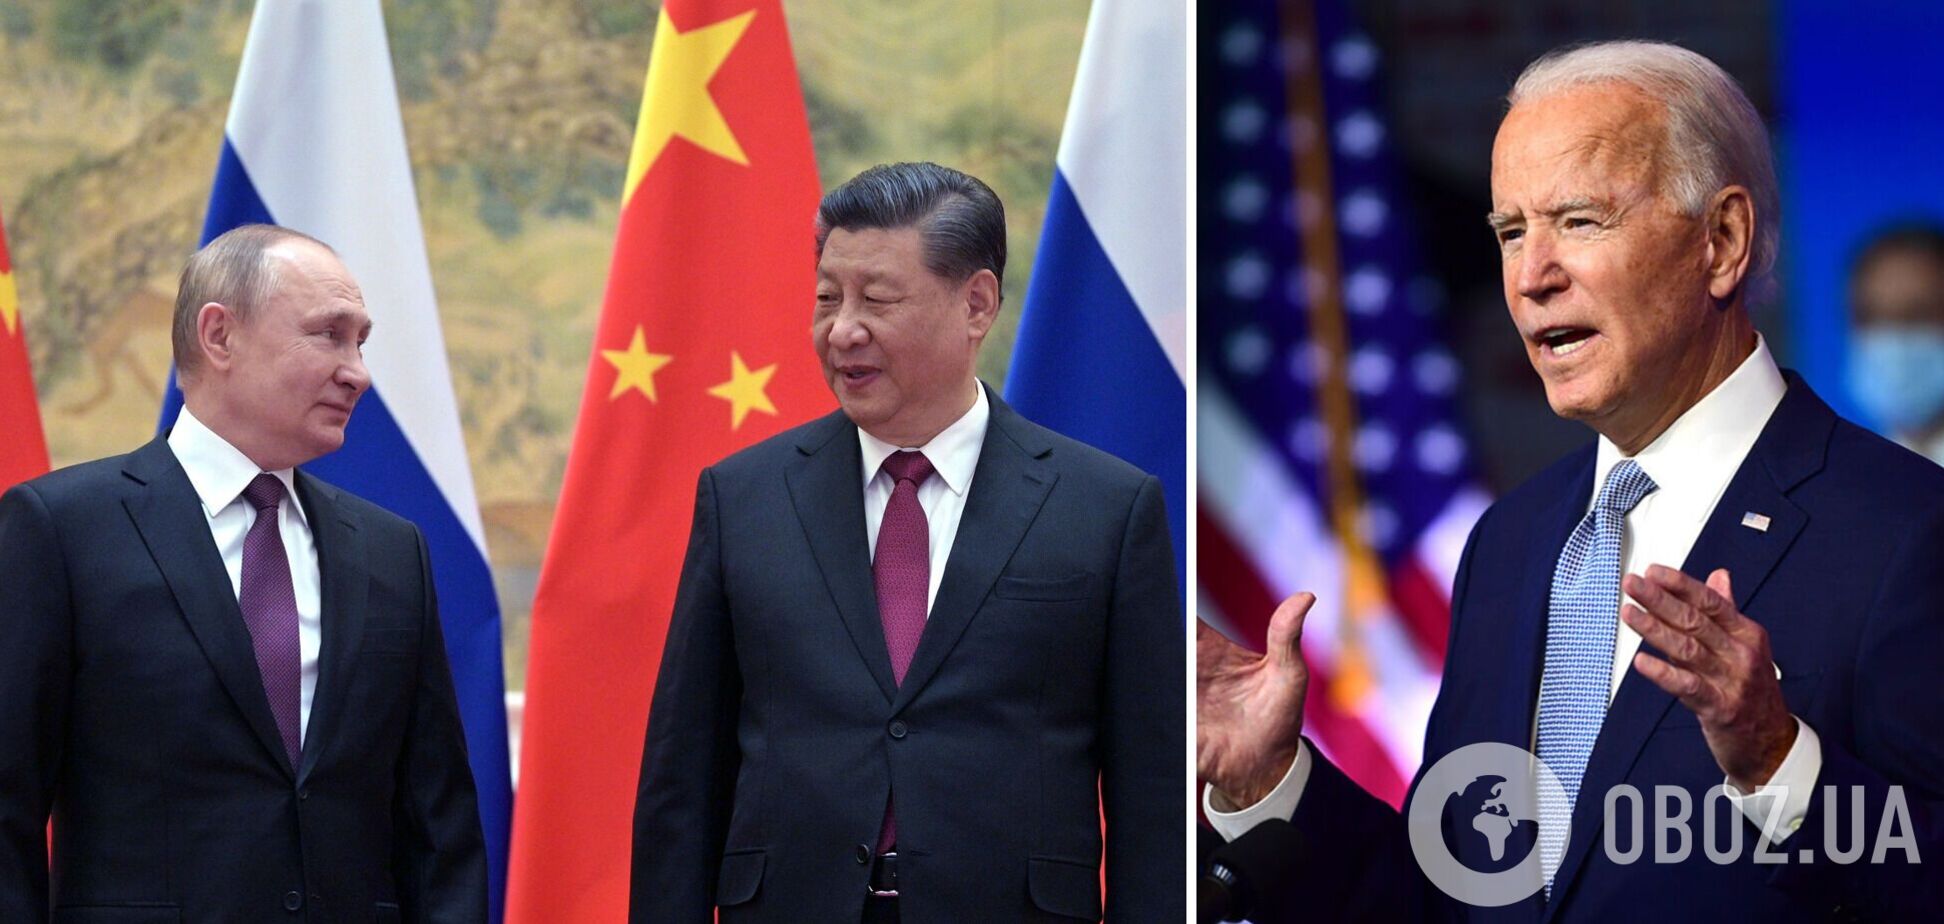 Джо Байден и Си Цзиньпин проведут переговоры из-за российской войны в Украине